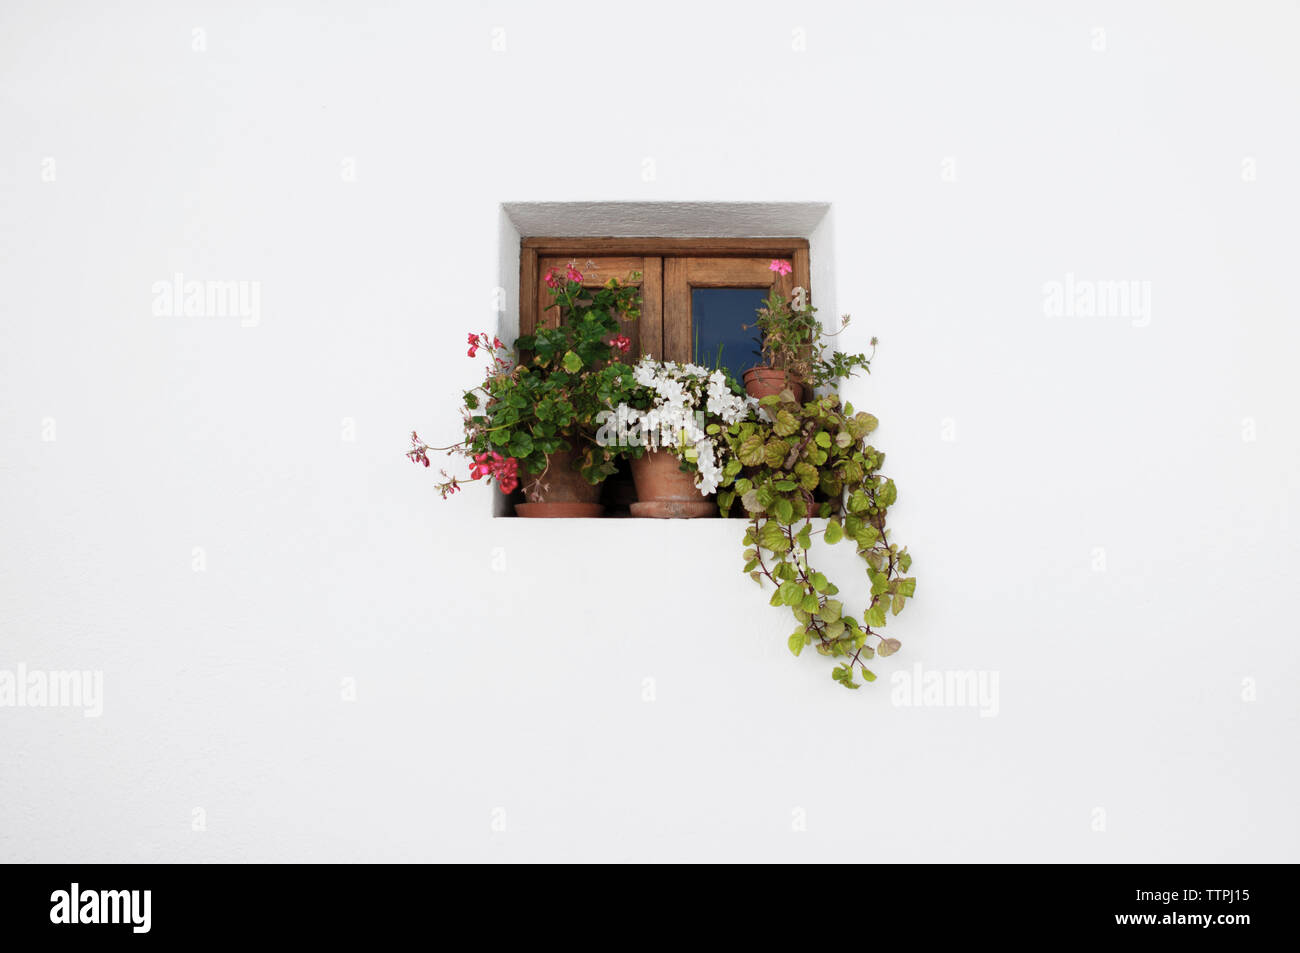 Basso angolo vista di vasi di fiori sul davanzale della finestra Foto Stock